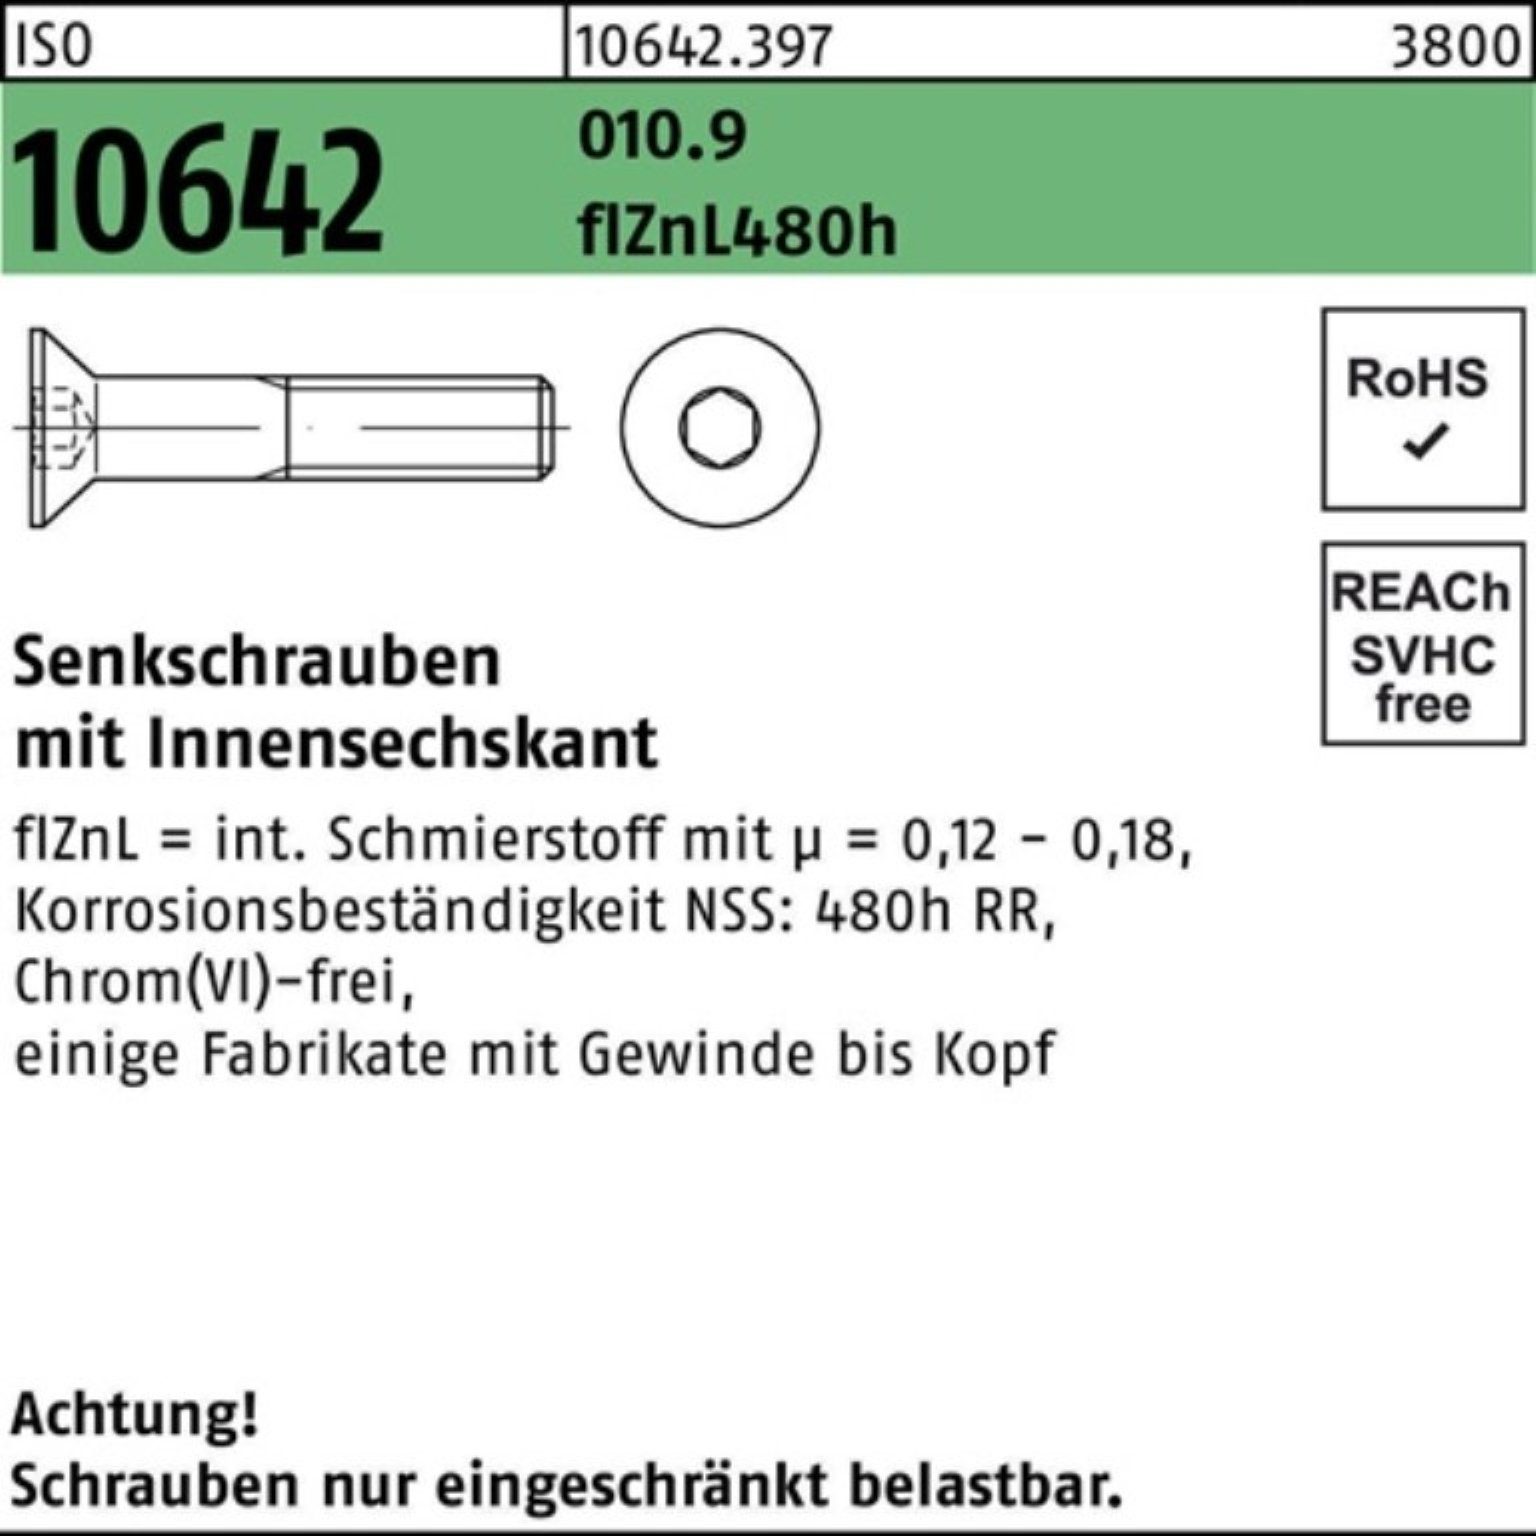 zi Senkschraube Innen-6kt flZnL Reyher 10642 010.9 M12x60 100er 480h Pack Senkschraube ISO